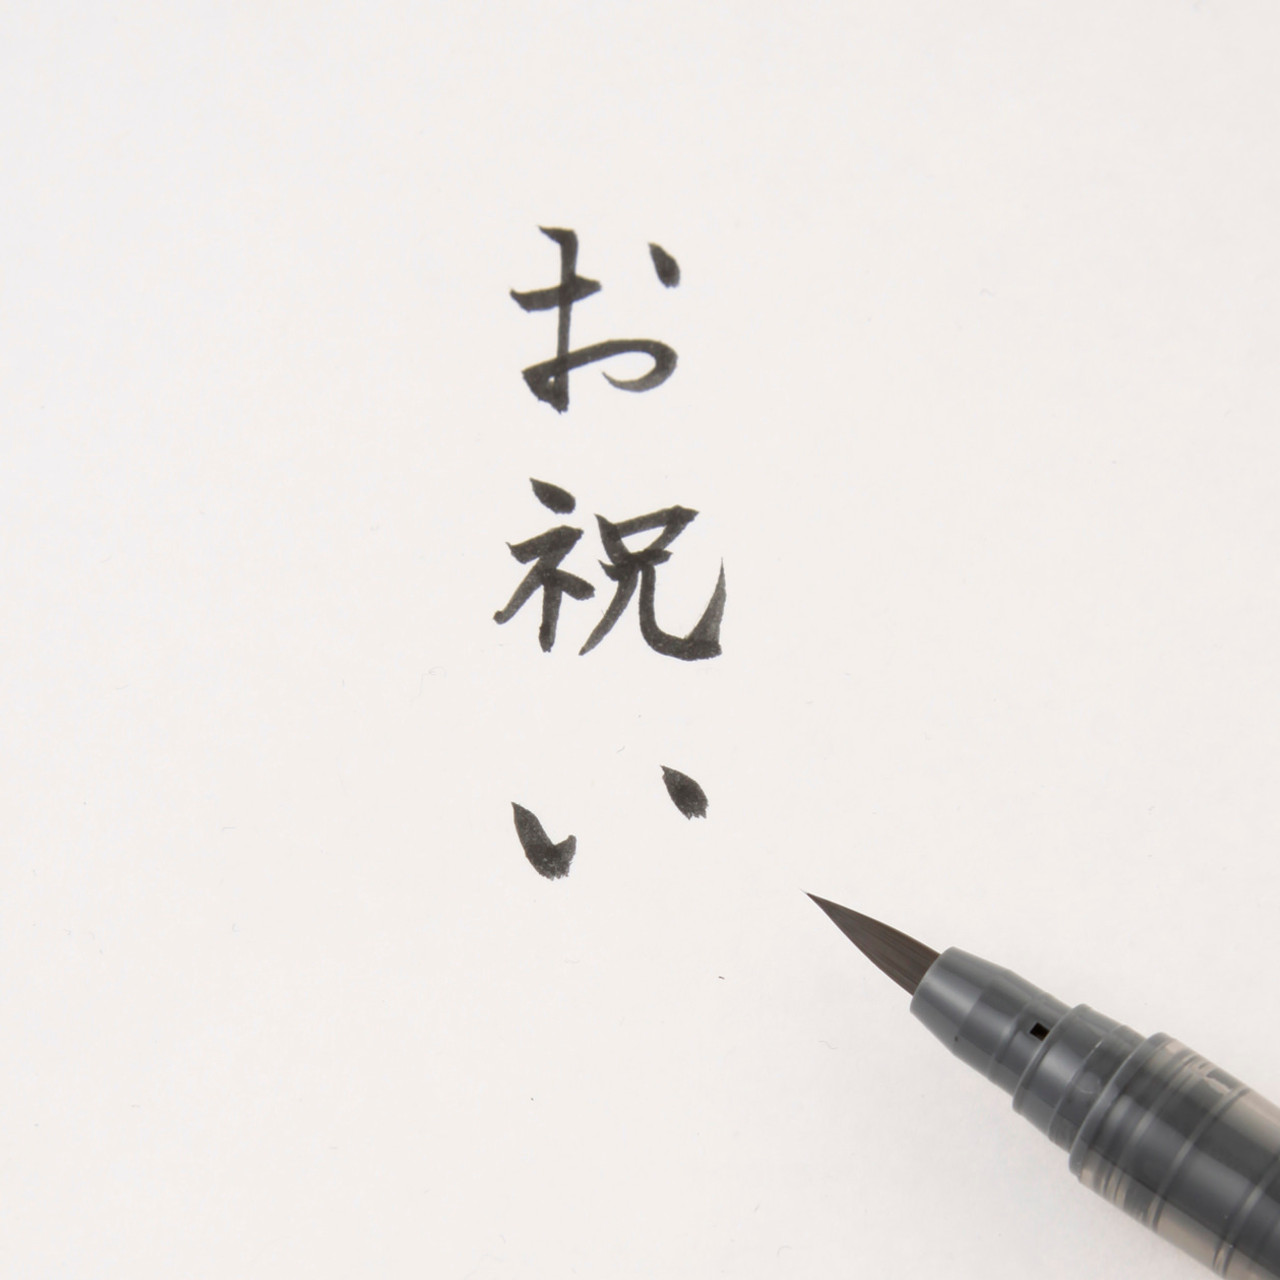 Stylo calligraphe japonais